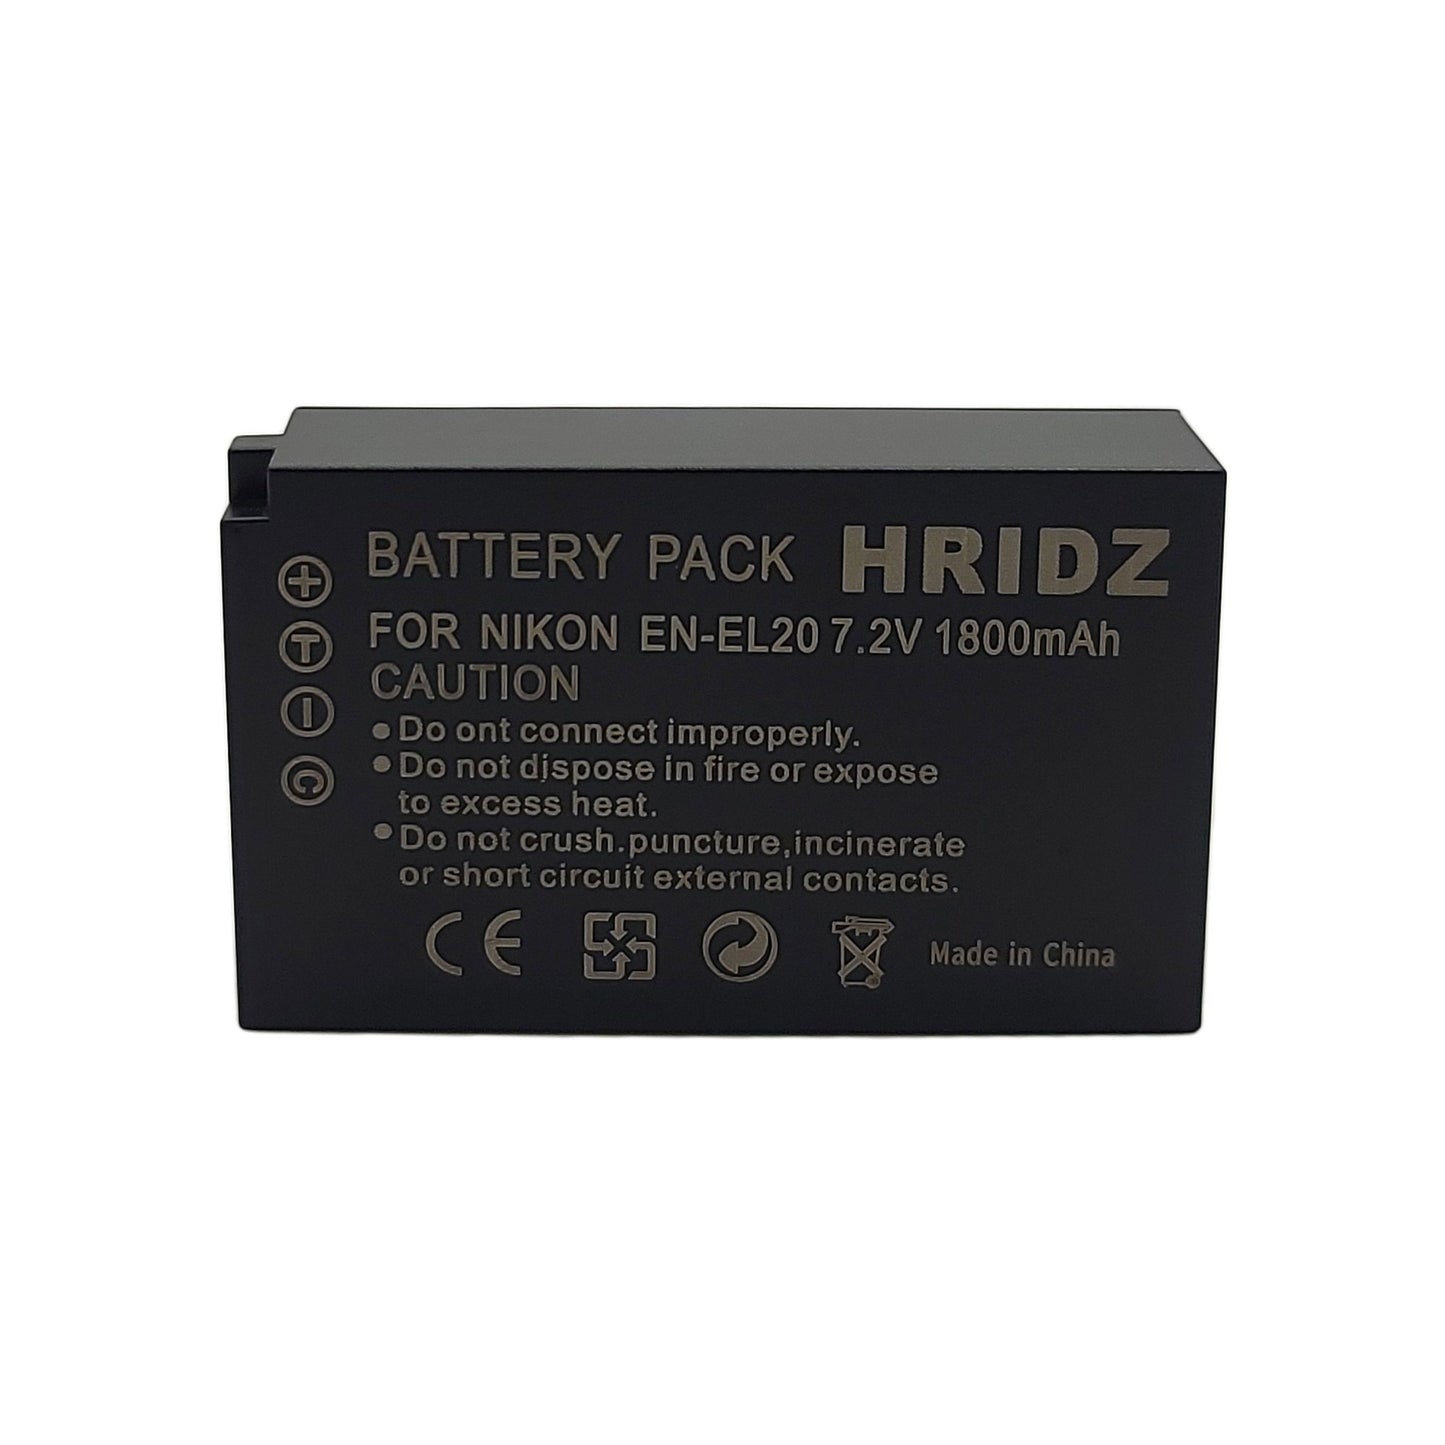 Hridz EN-EL20 Battery (2 pack) and Dual USB Charger for Nikon EN-EL20 EL20A